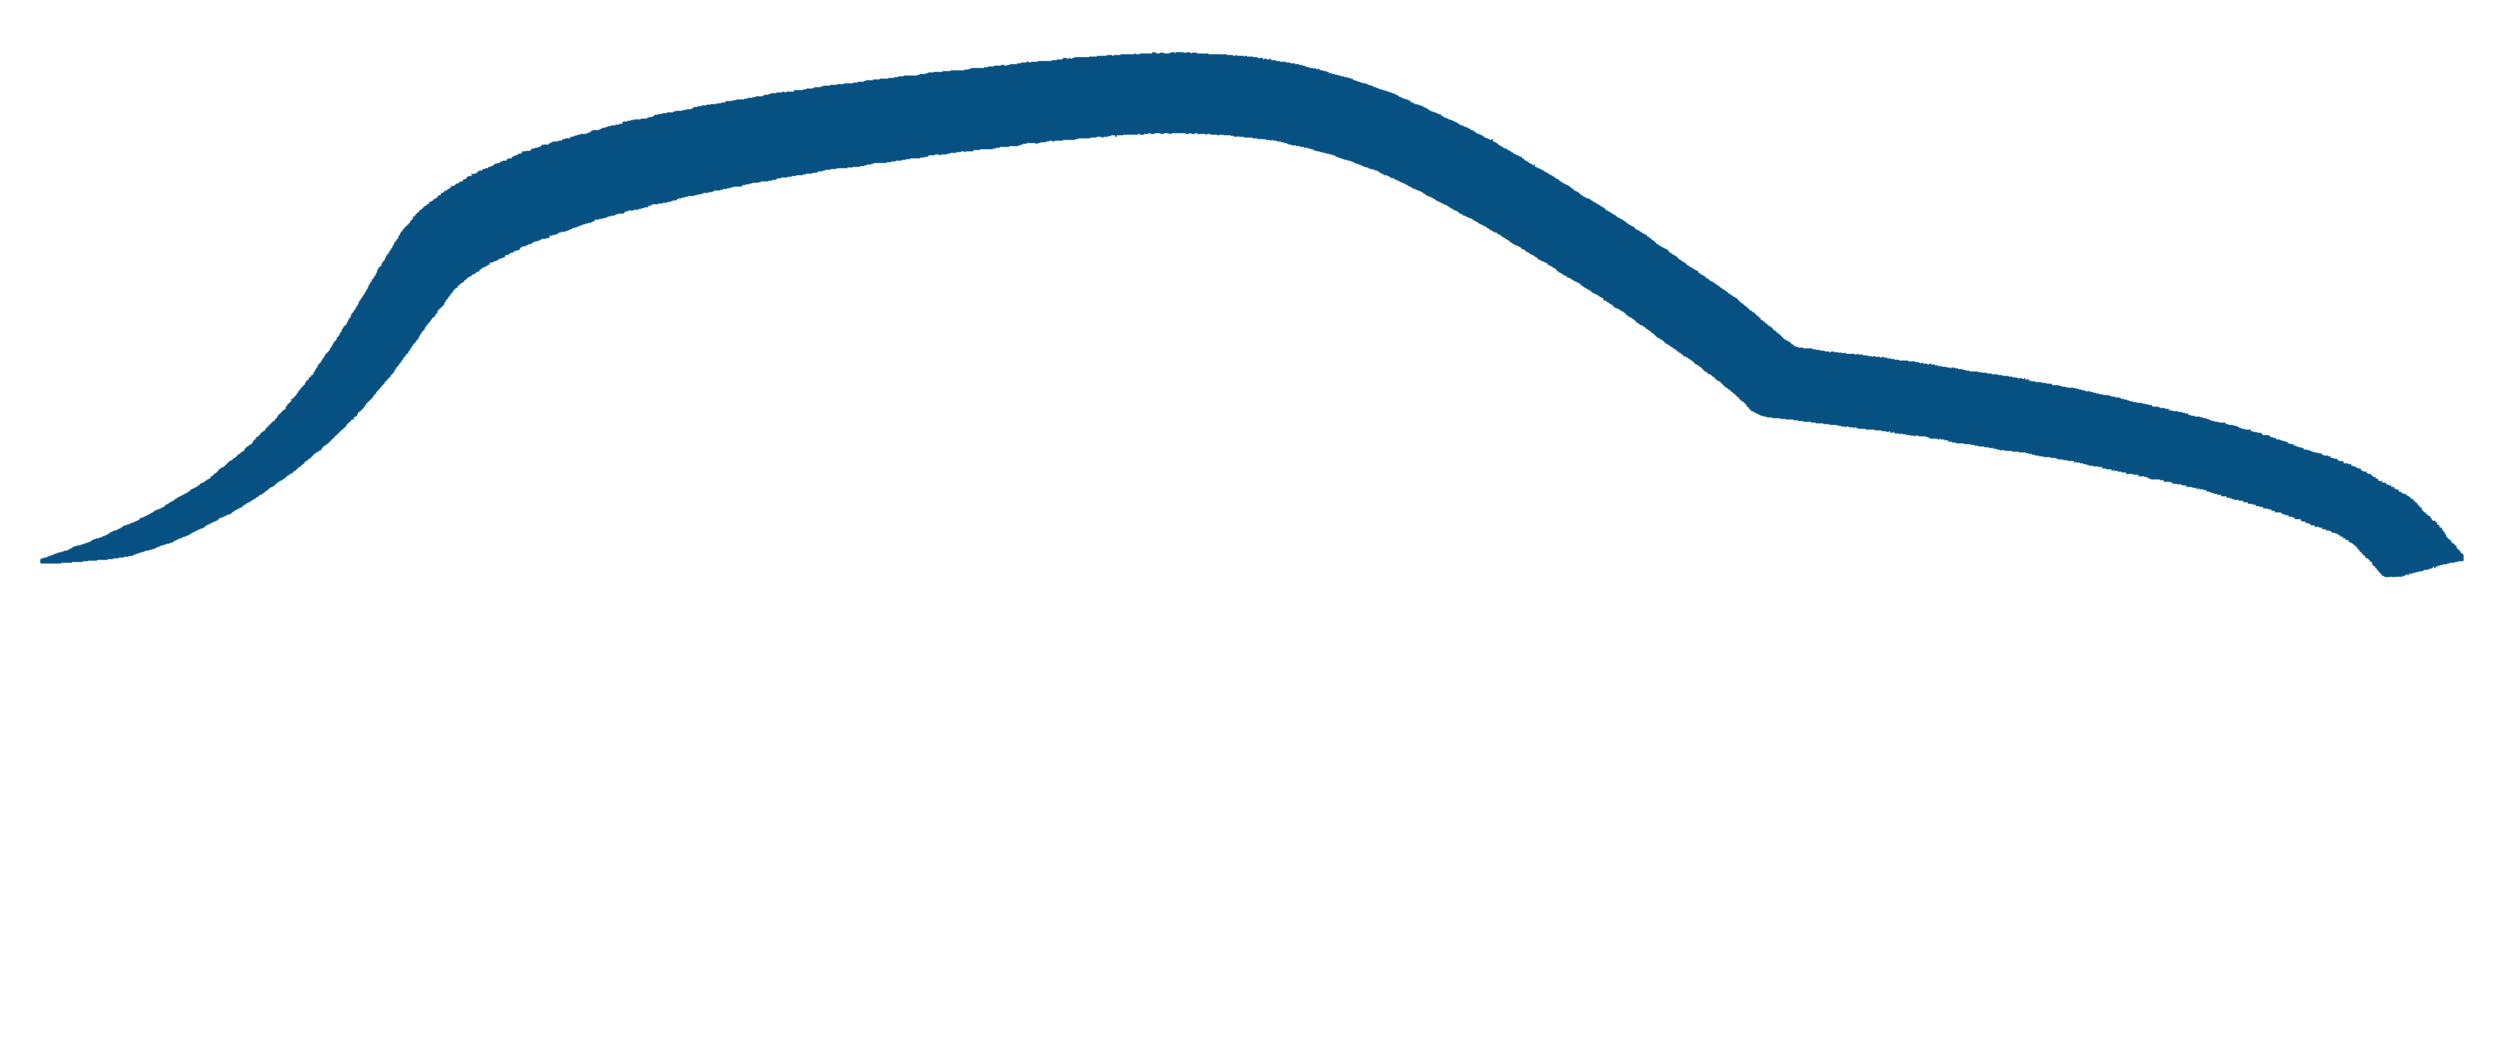 Mike James Mobile Mechanical